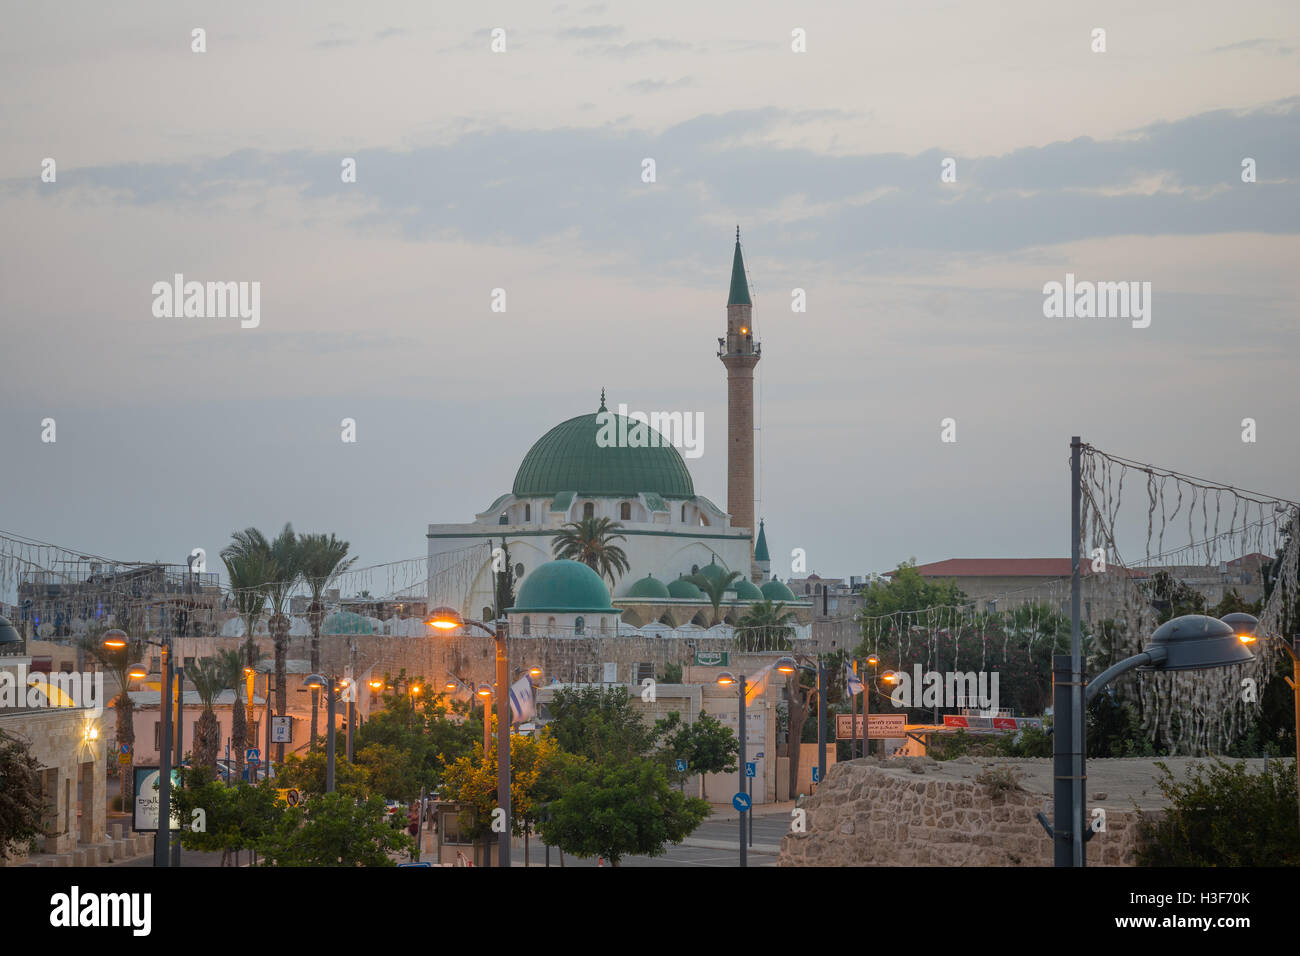 ACRE, Israele - 18 ottobre 2015: un business street e Ahmed el-Jazzar moschea, nella città vecchia di Acri, Israele. Acre è uno Foto Stock